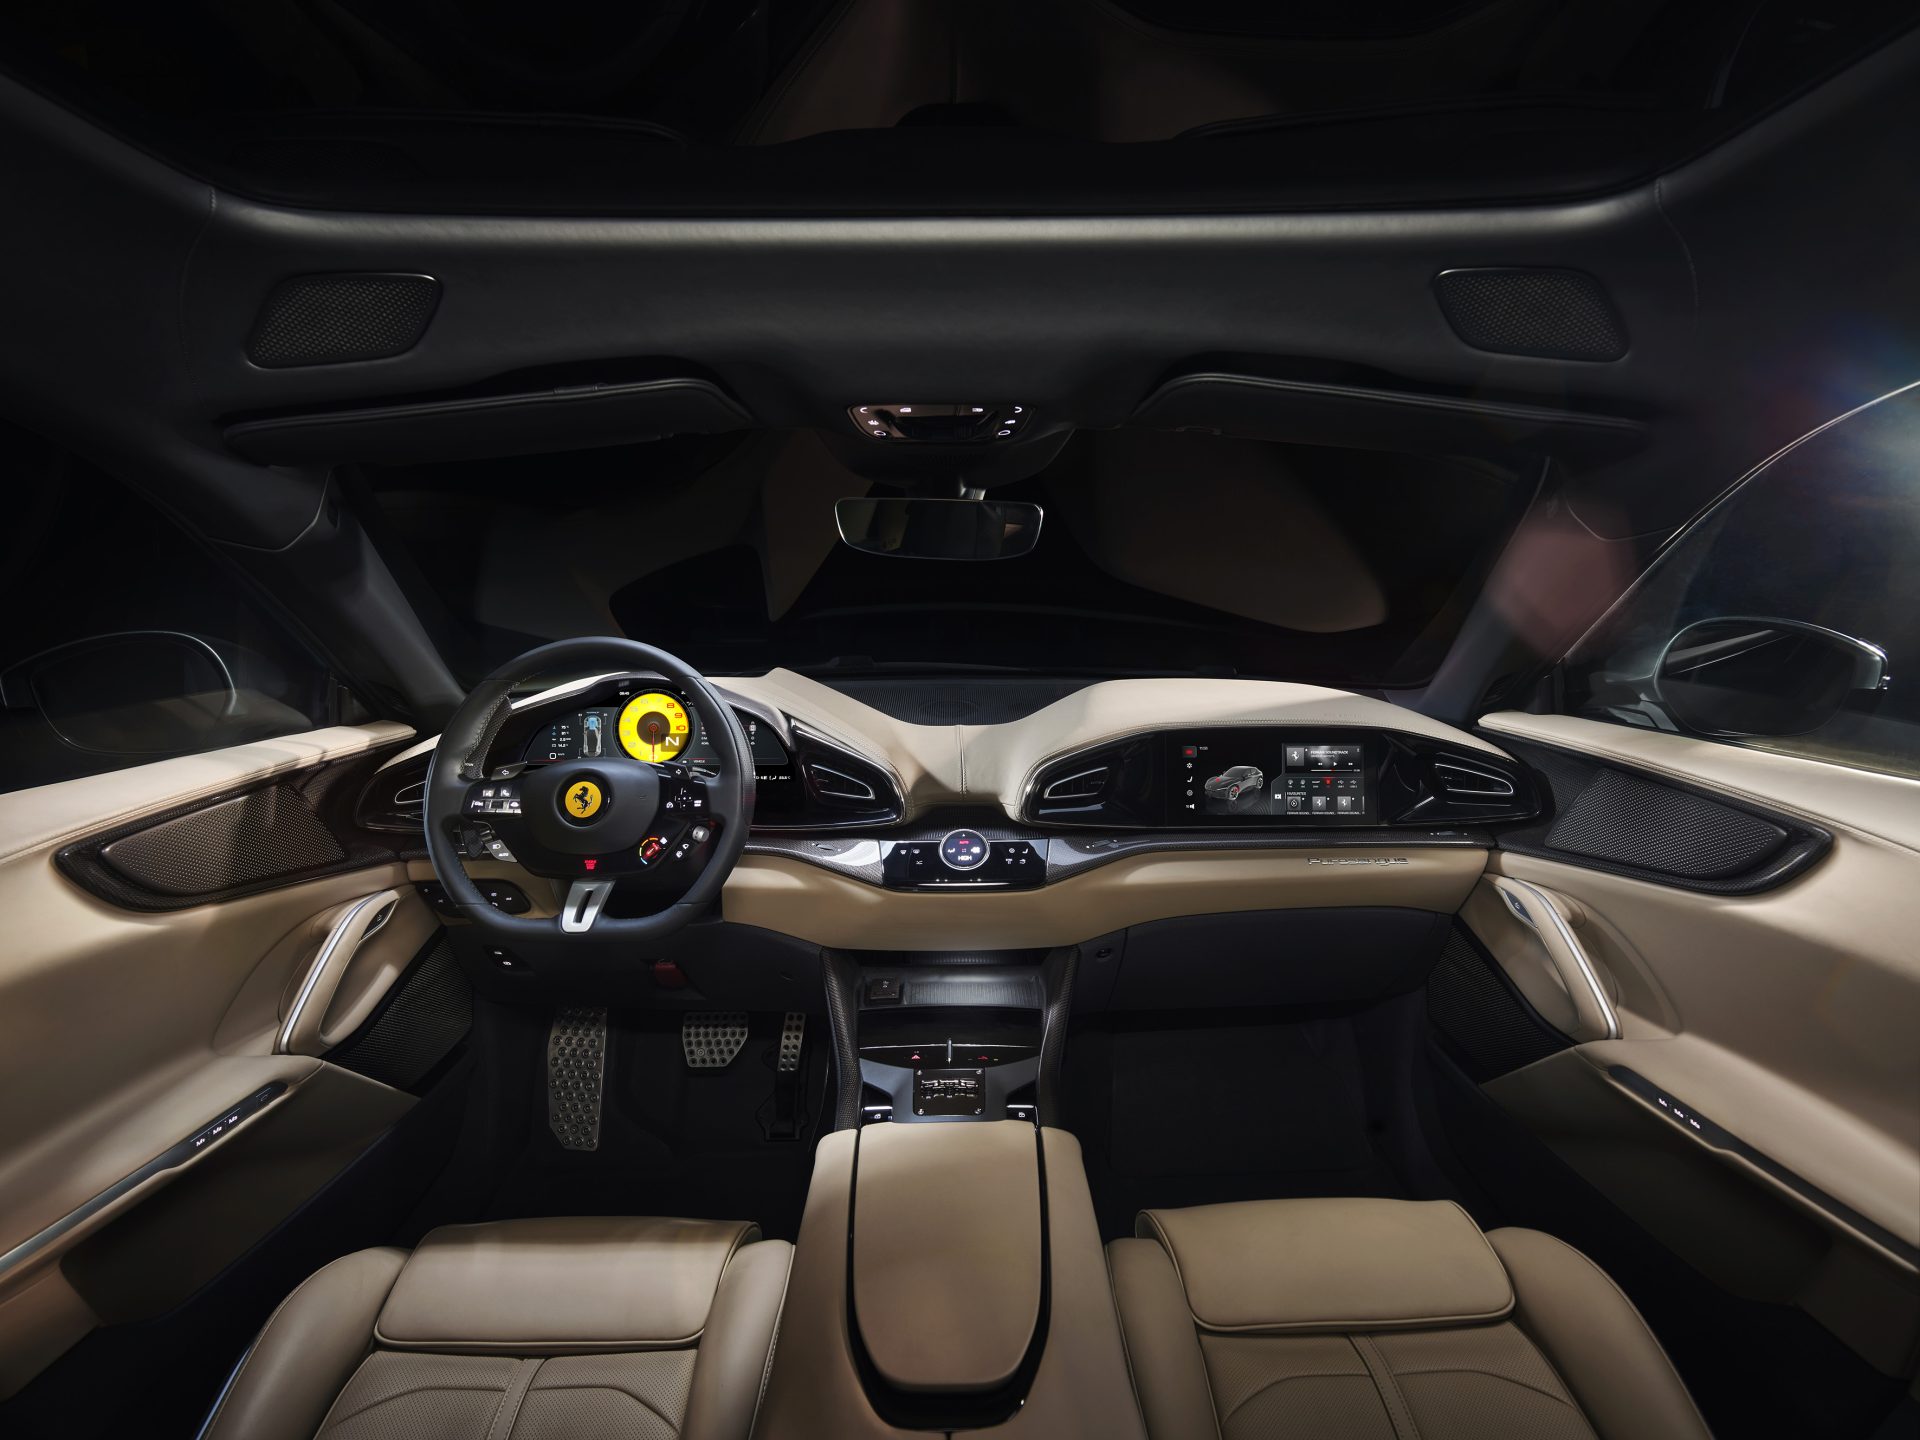 14 Interior 2 HR A4 Ferrari Purosangue : V12, ατμοσφαιρική, με 725 ίππους